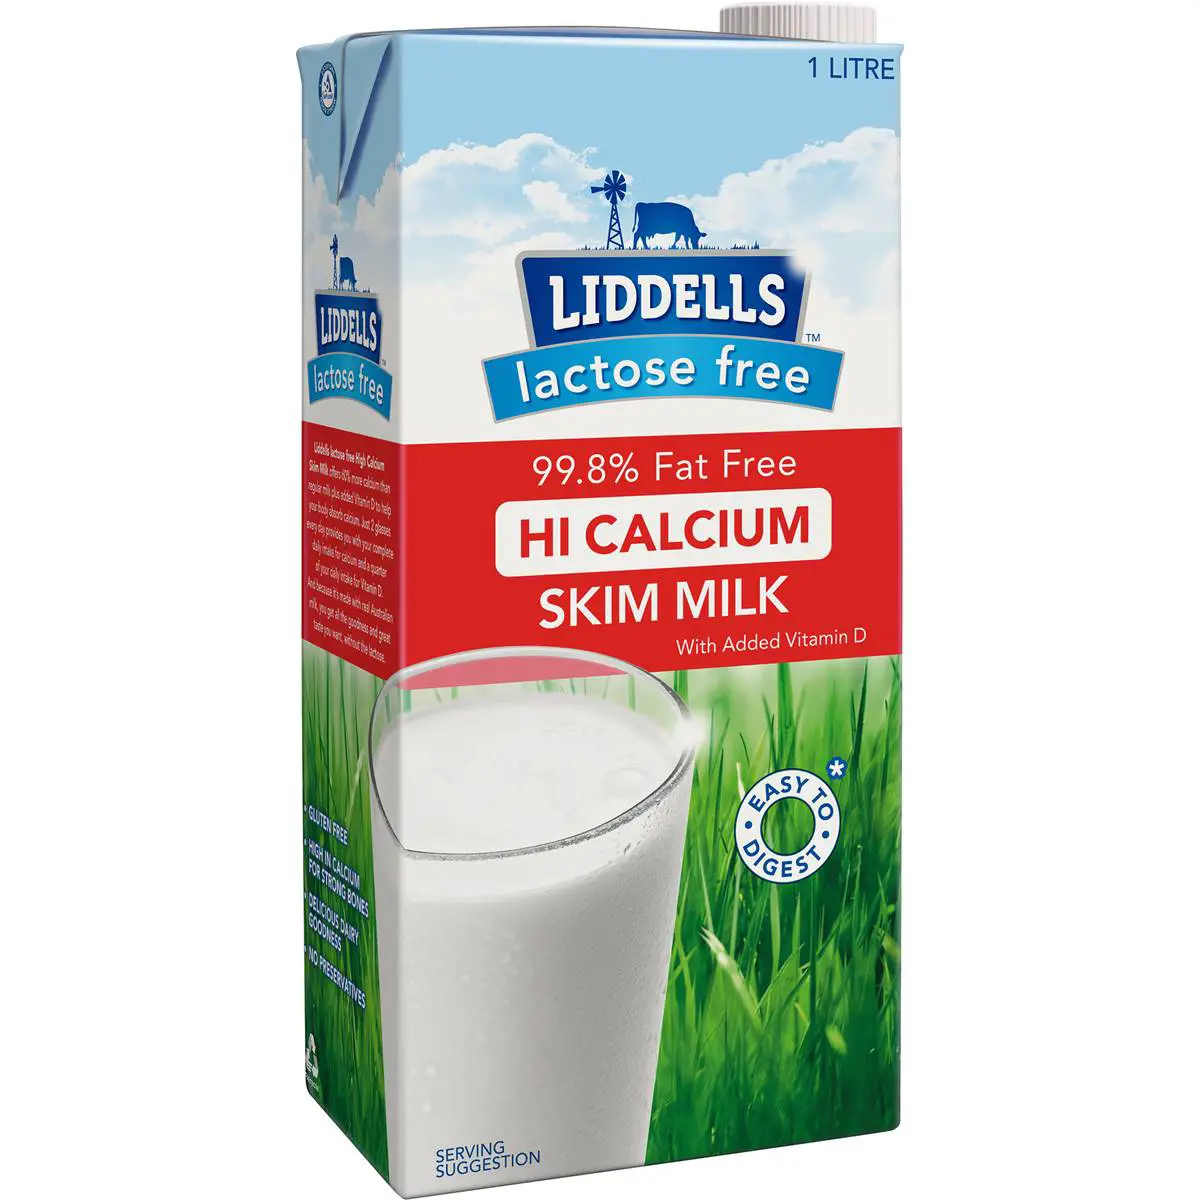 Liddells High Calcium Skim Milk Lactose Free 1l